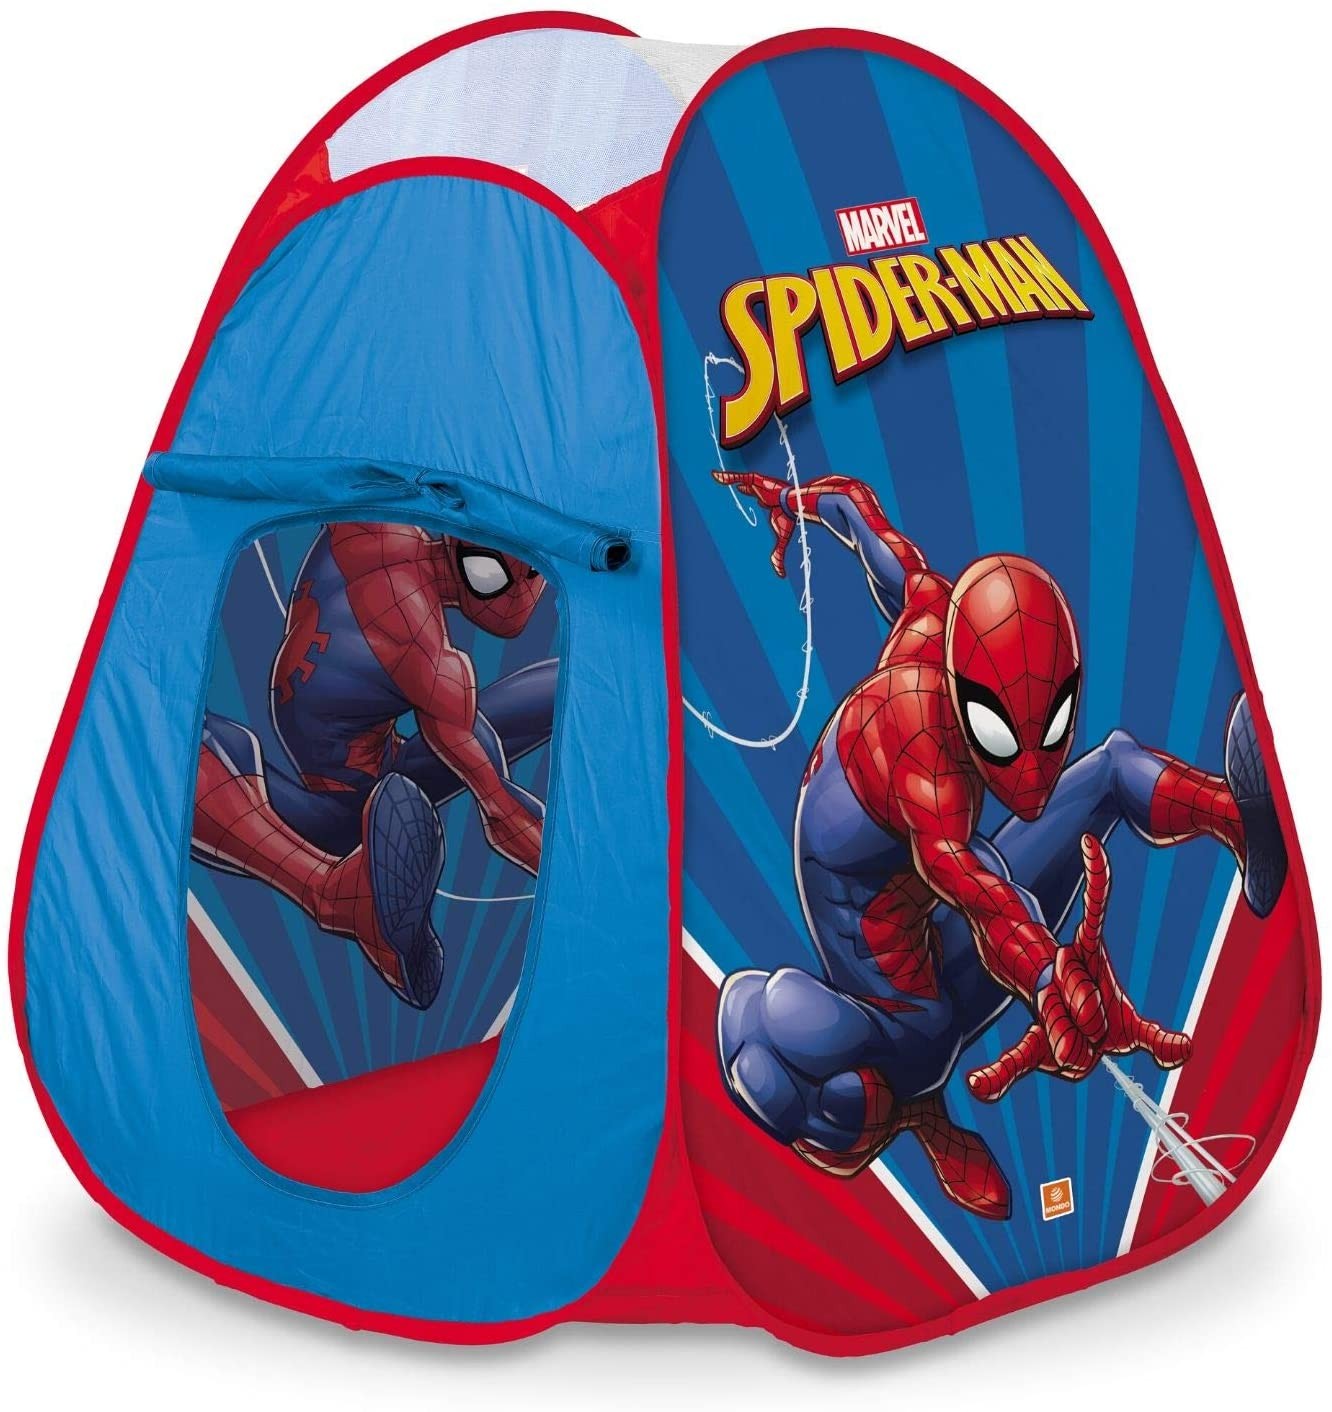 Tente Pop-Up Spider-Man